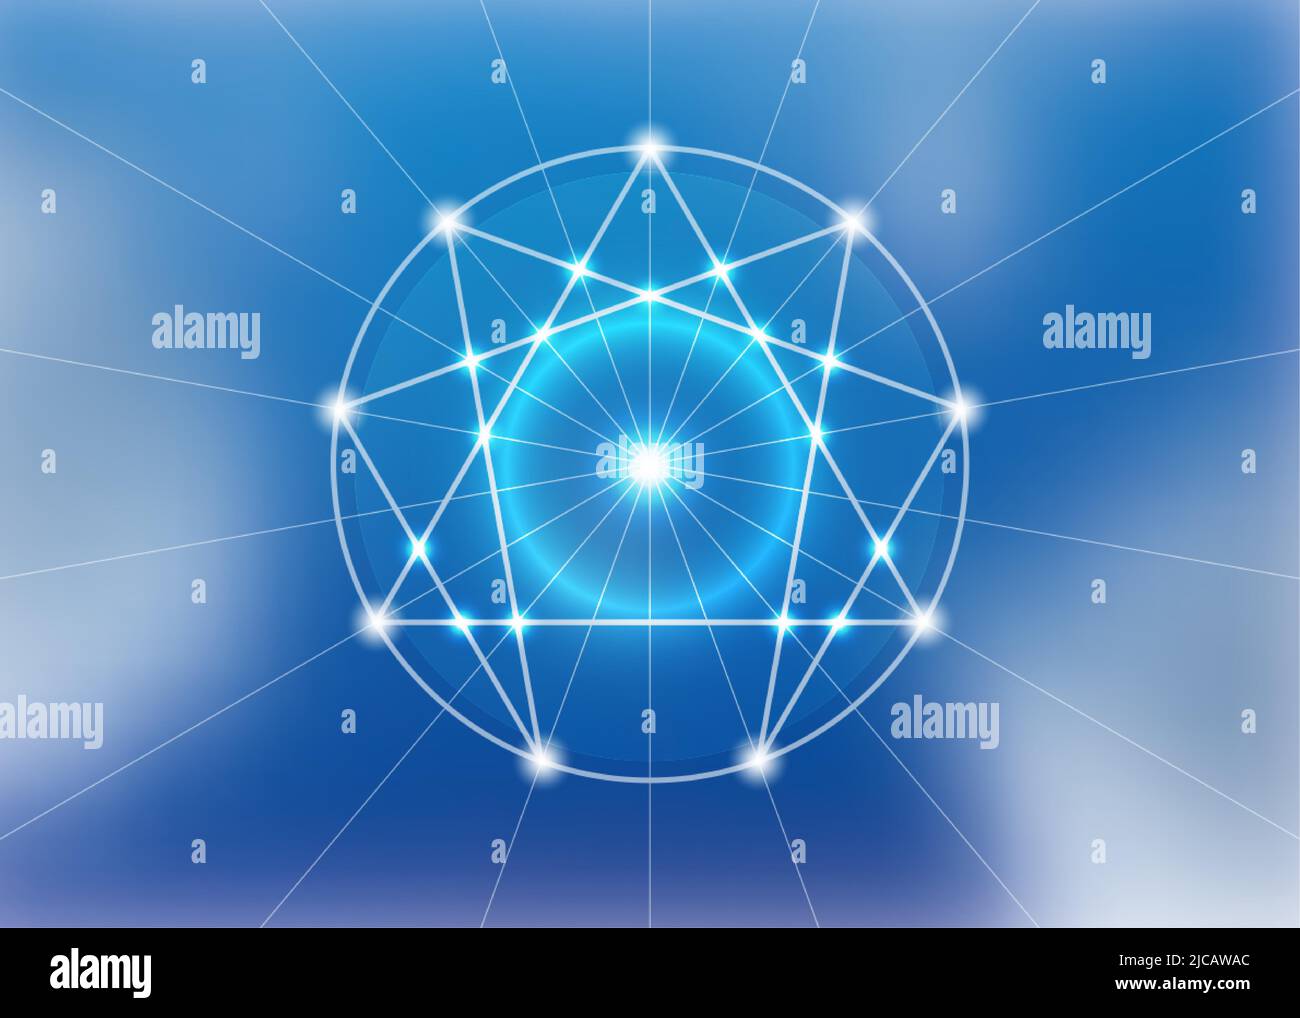 Enneagram Symbol, heilige Geometrie, Diagramm Logo Vorlage, weiße Neon-Licht-Stil, Vektor-Illustration isoliert auf blauem Himmel Hintergrund Stock Vektor